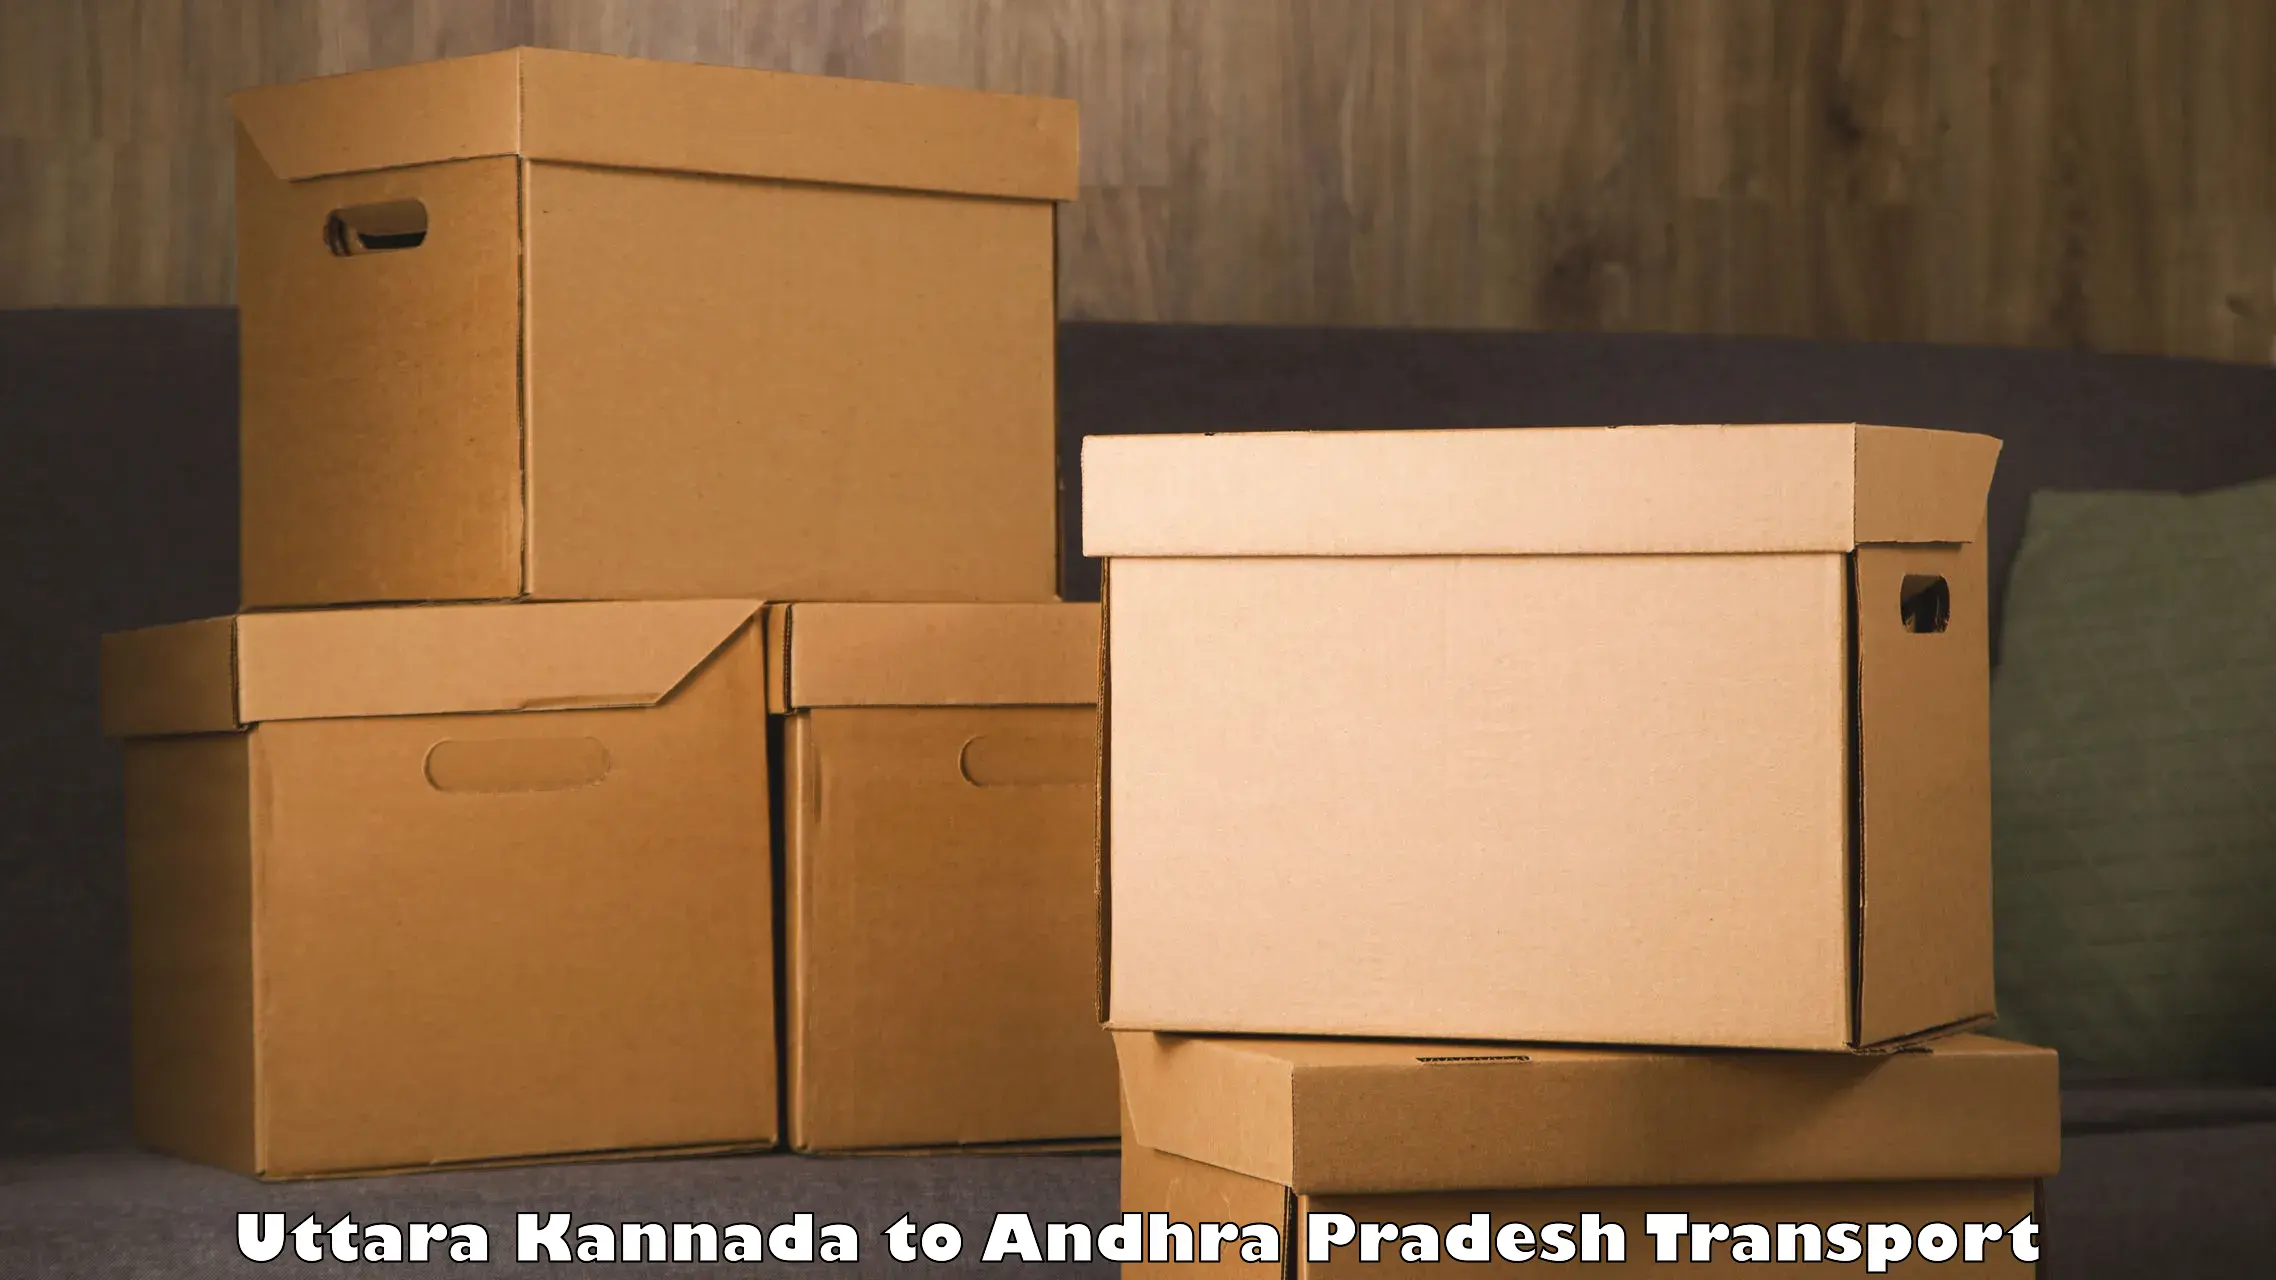 Truck transport companies in India Uttara Kannada to Madakasira